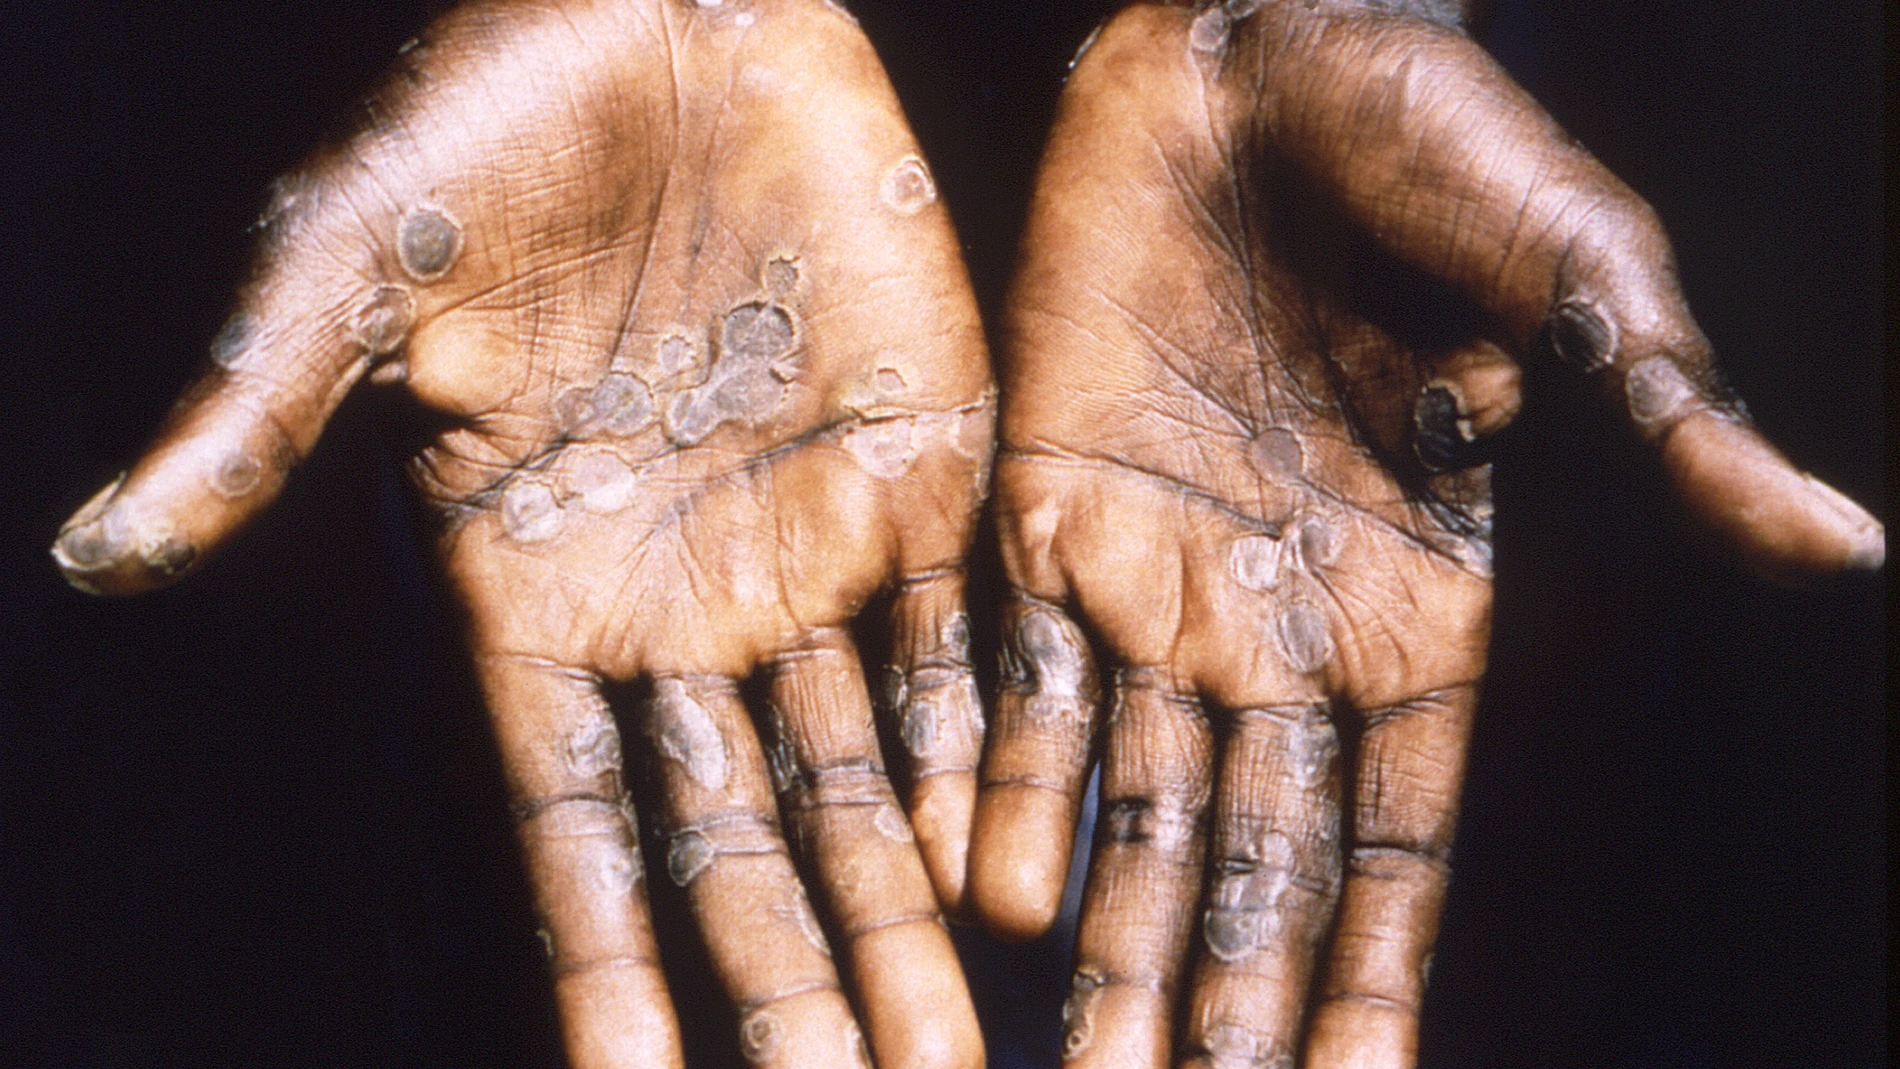 Imagen de las lesiones en la piel provocadas por la viruela del mono.